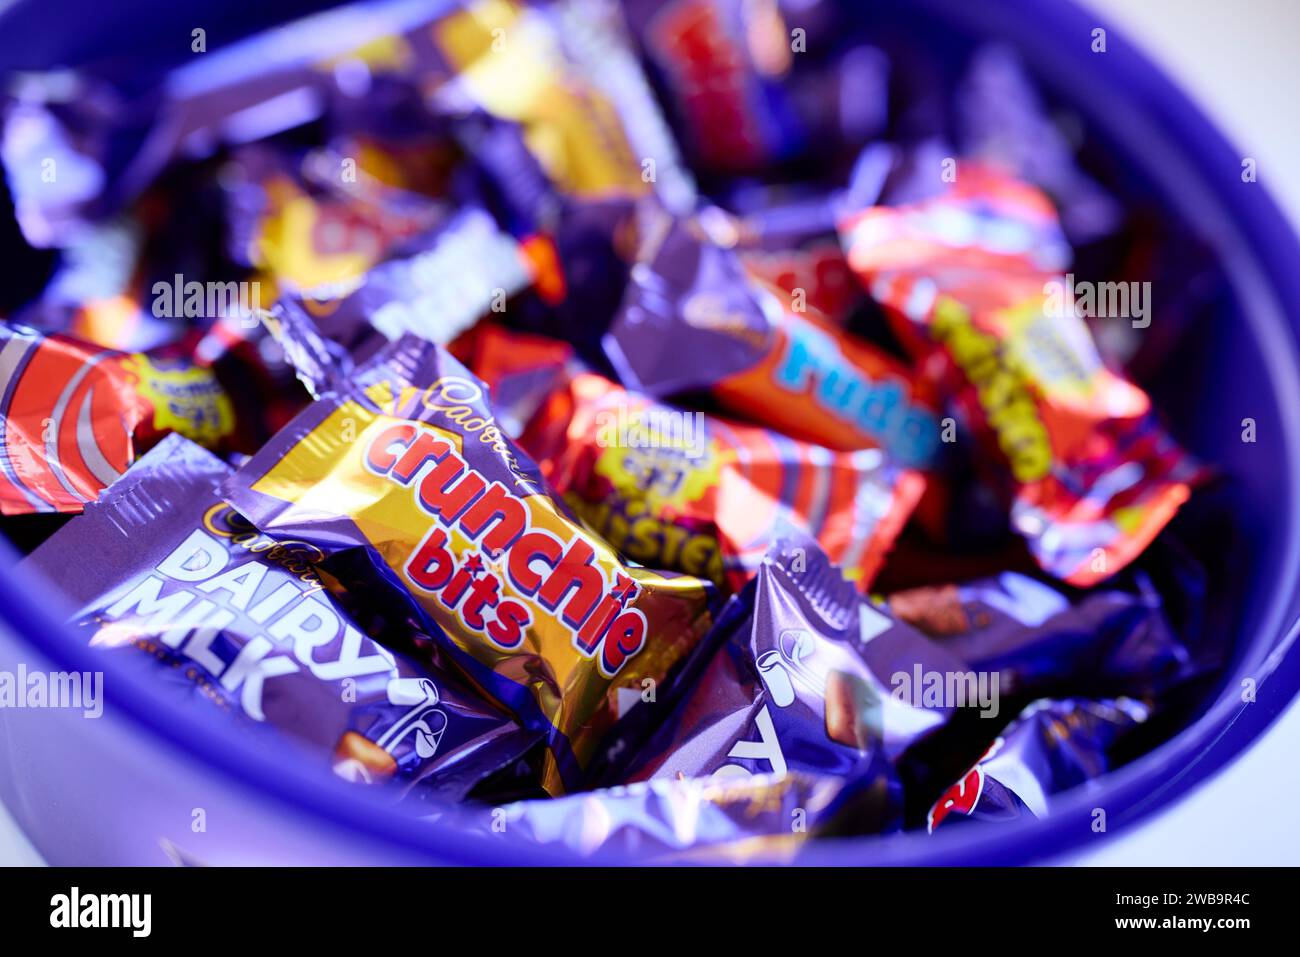 Boîte de bonbons Cadbury Heroes Banque D'Images